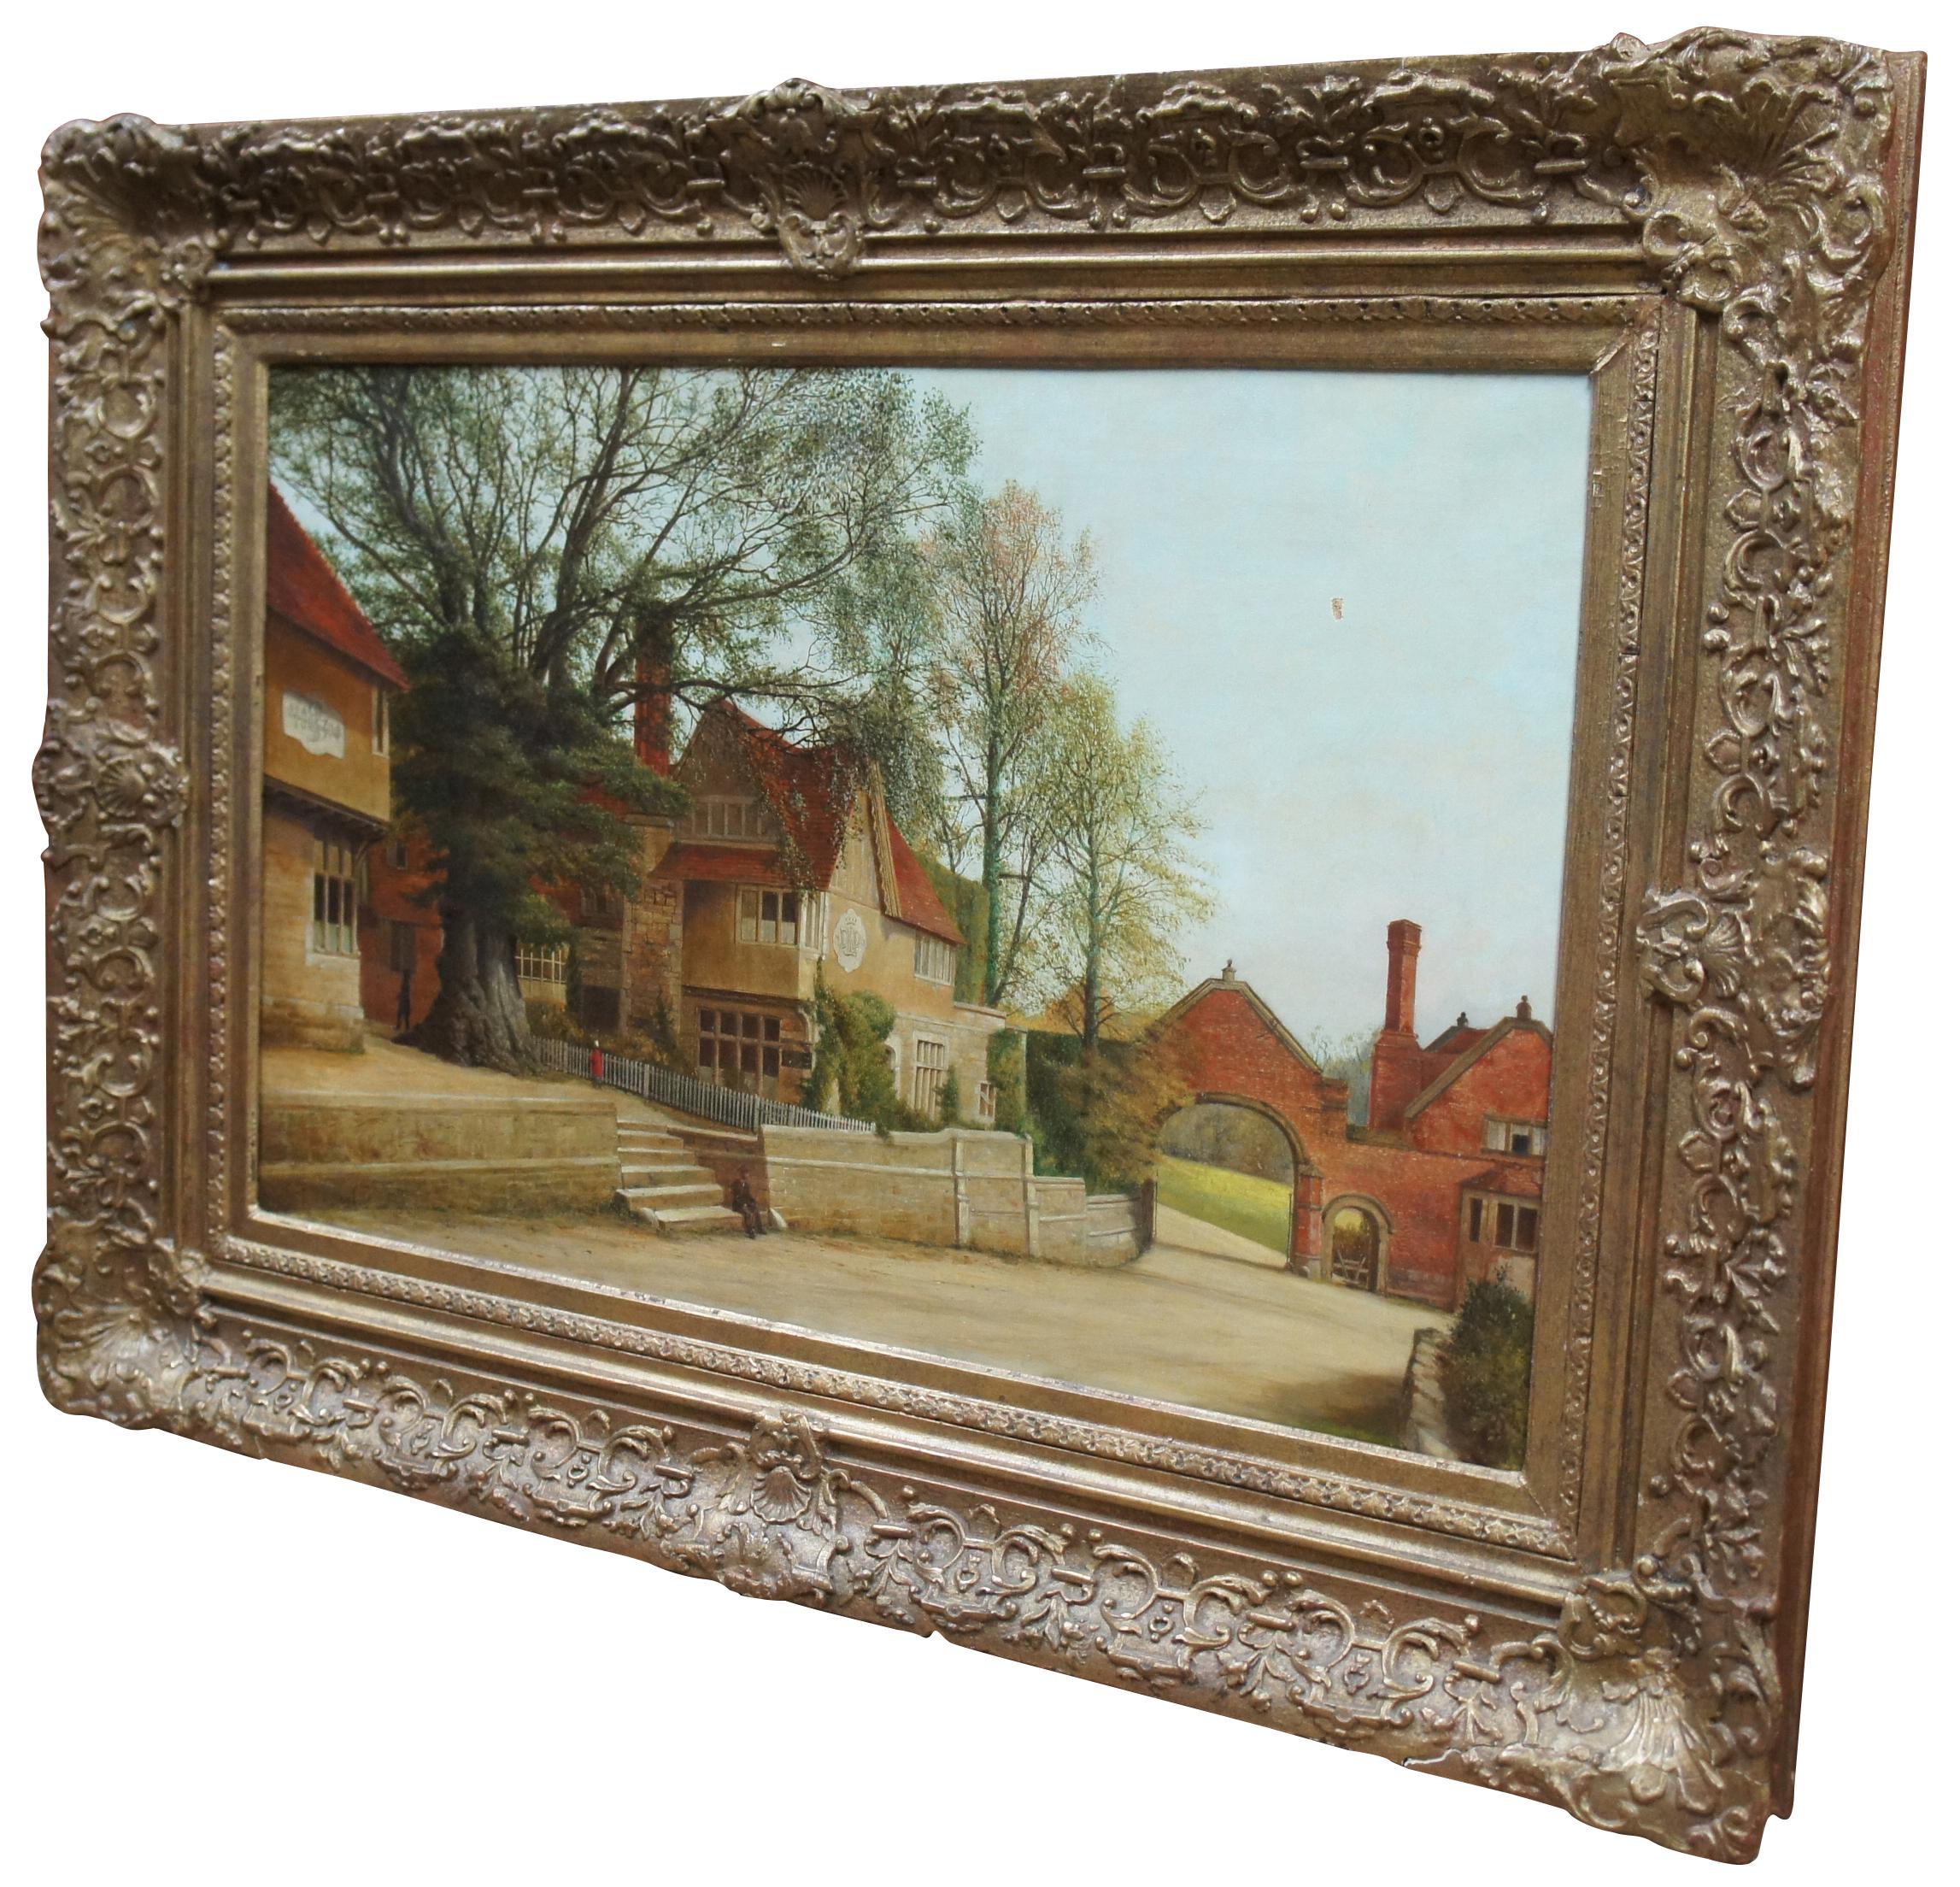 Peinture ancienne du 19e siècle, à l'huile sur toile, représentant une scène de village avec une rue européenne pittoresque, un grand arbre et trois personnages. Mesures : 35